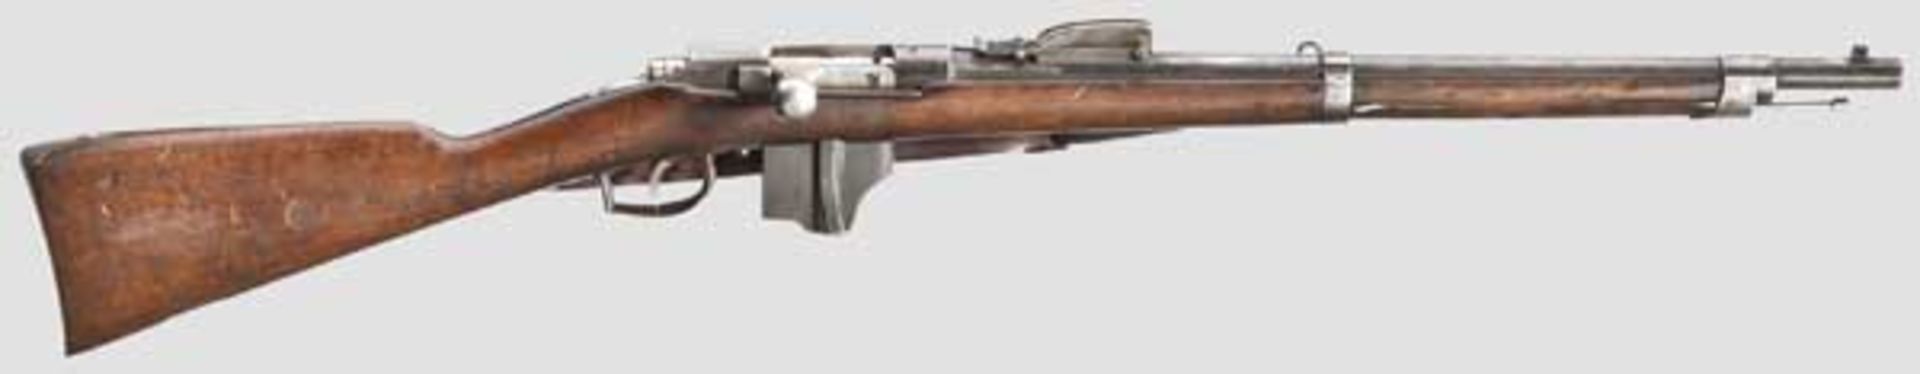 Fremdes Gewehr in deutschen Diensten: Holländ. Karabiner Beaumont-Vitali M 1871/88 Kal. 11,3 x 50,